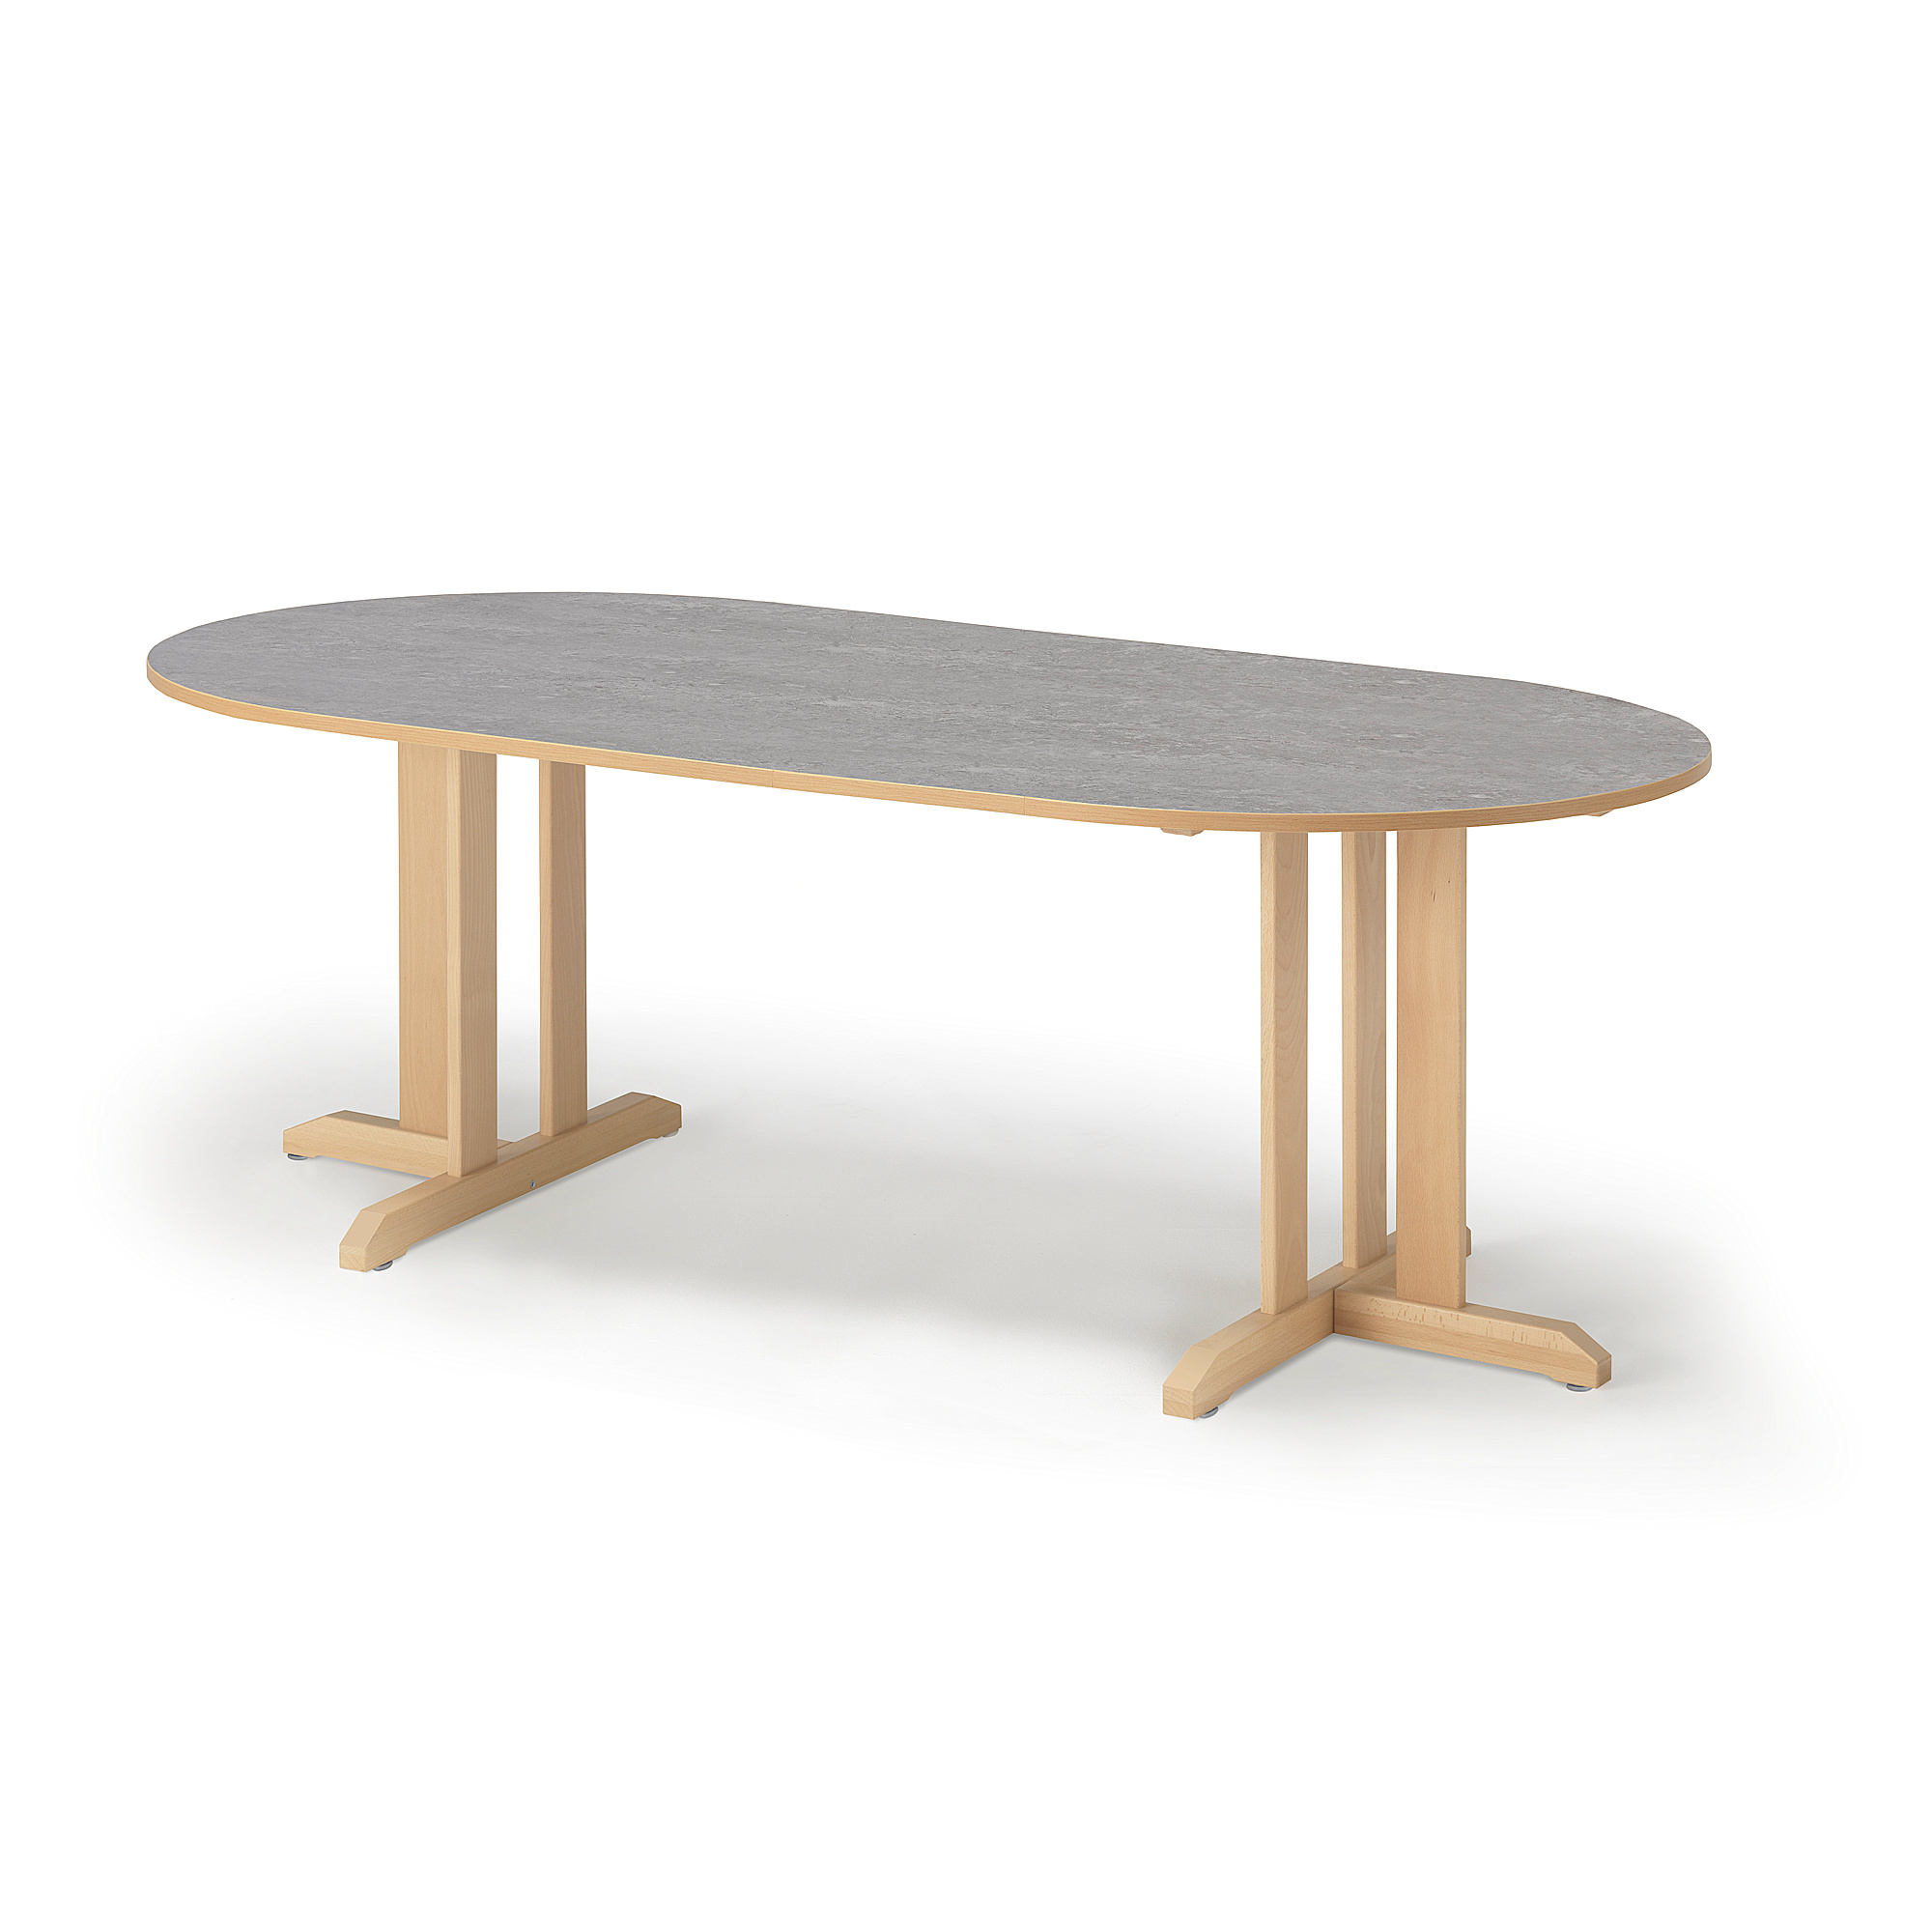 Stůl KUPOL, 2000x800x720 mm, oválný, akustické linoleum, bříza/šedá